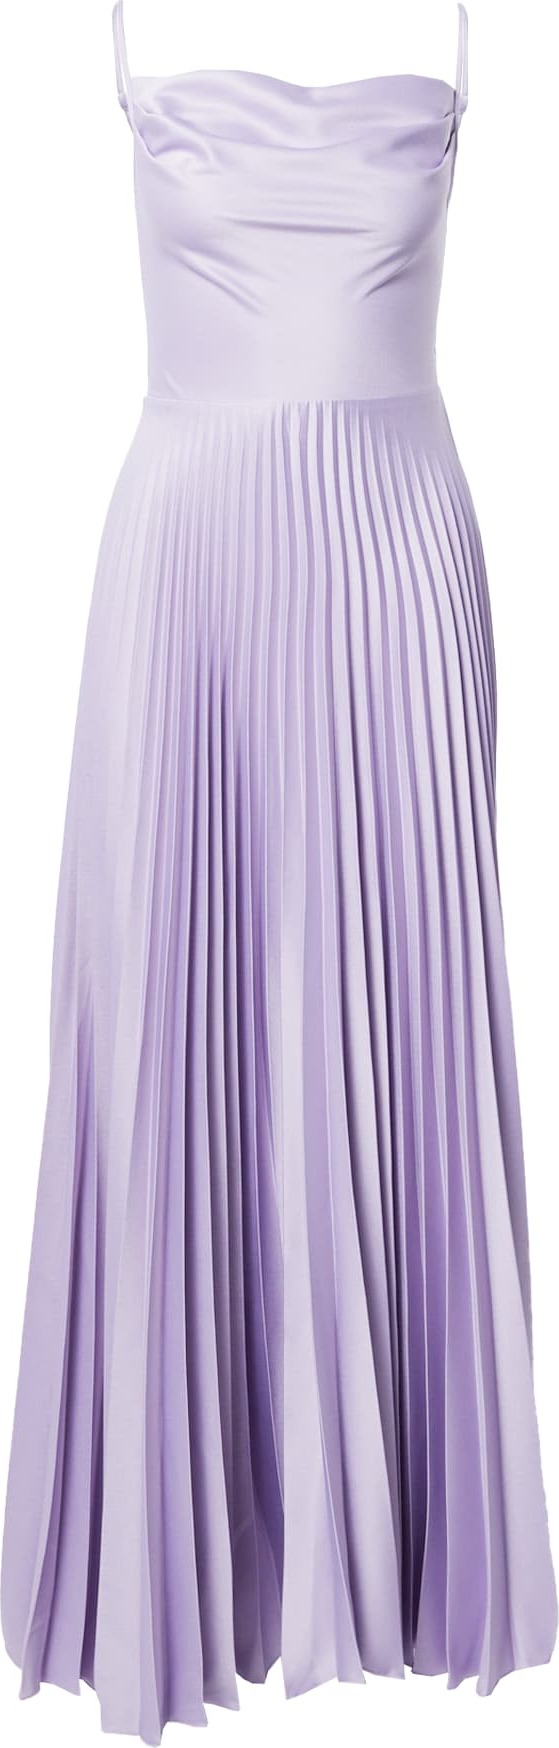 Společenské šaty closet london světle fialová